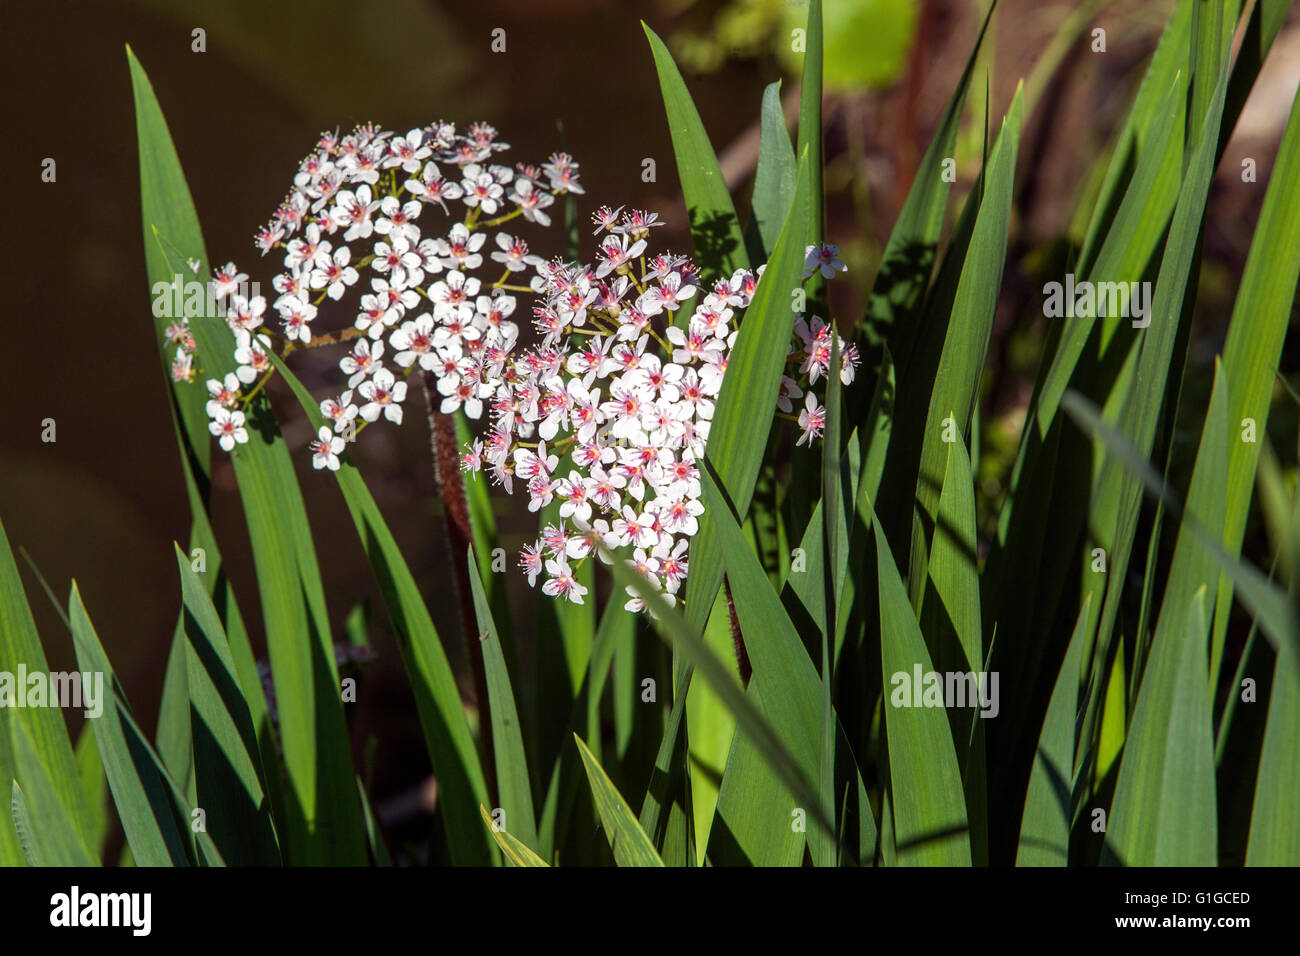 Darmera peltata flor, ruibarbo indio o planta paraguas, floreciendo en la orilla del arroyo entre las hojas de lirios Foto de stock